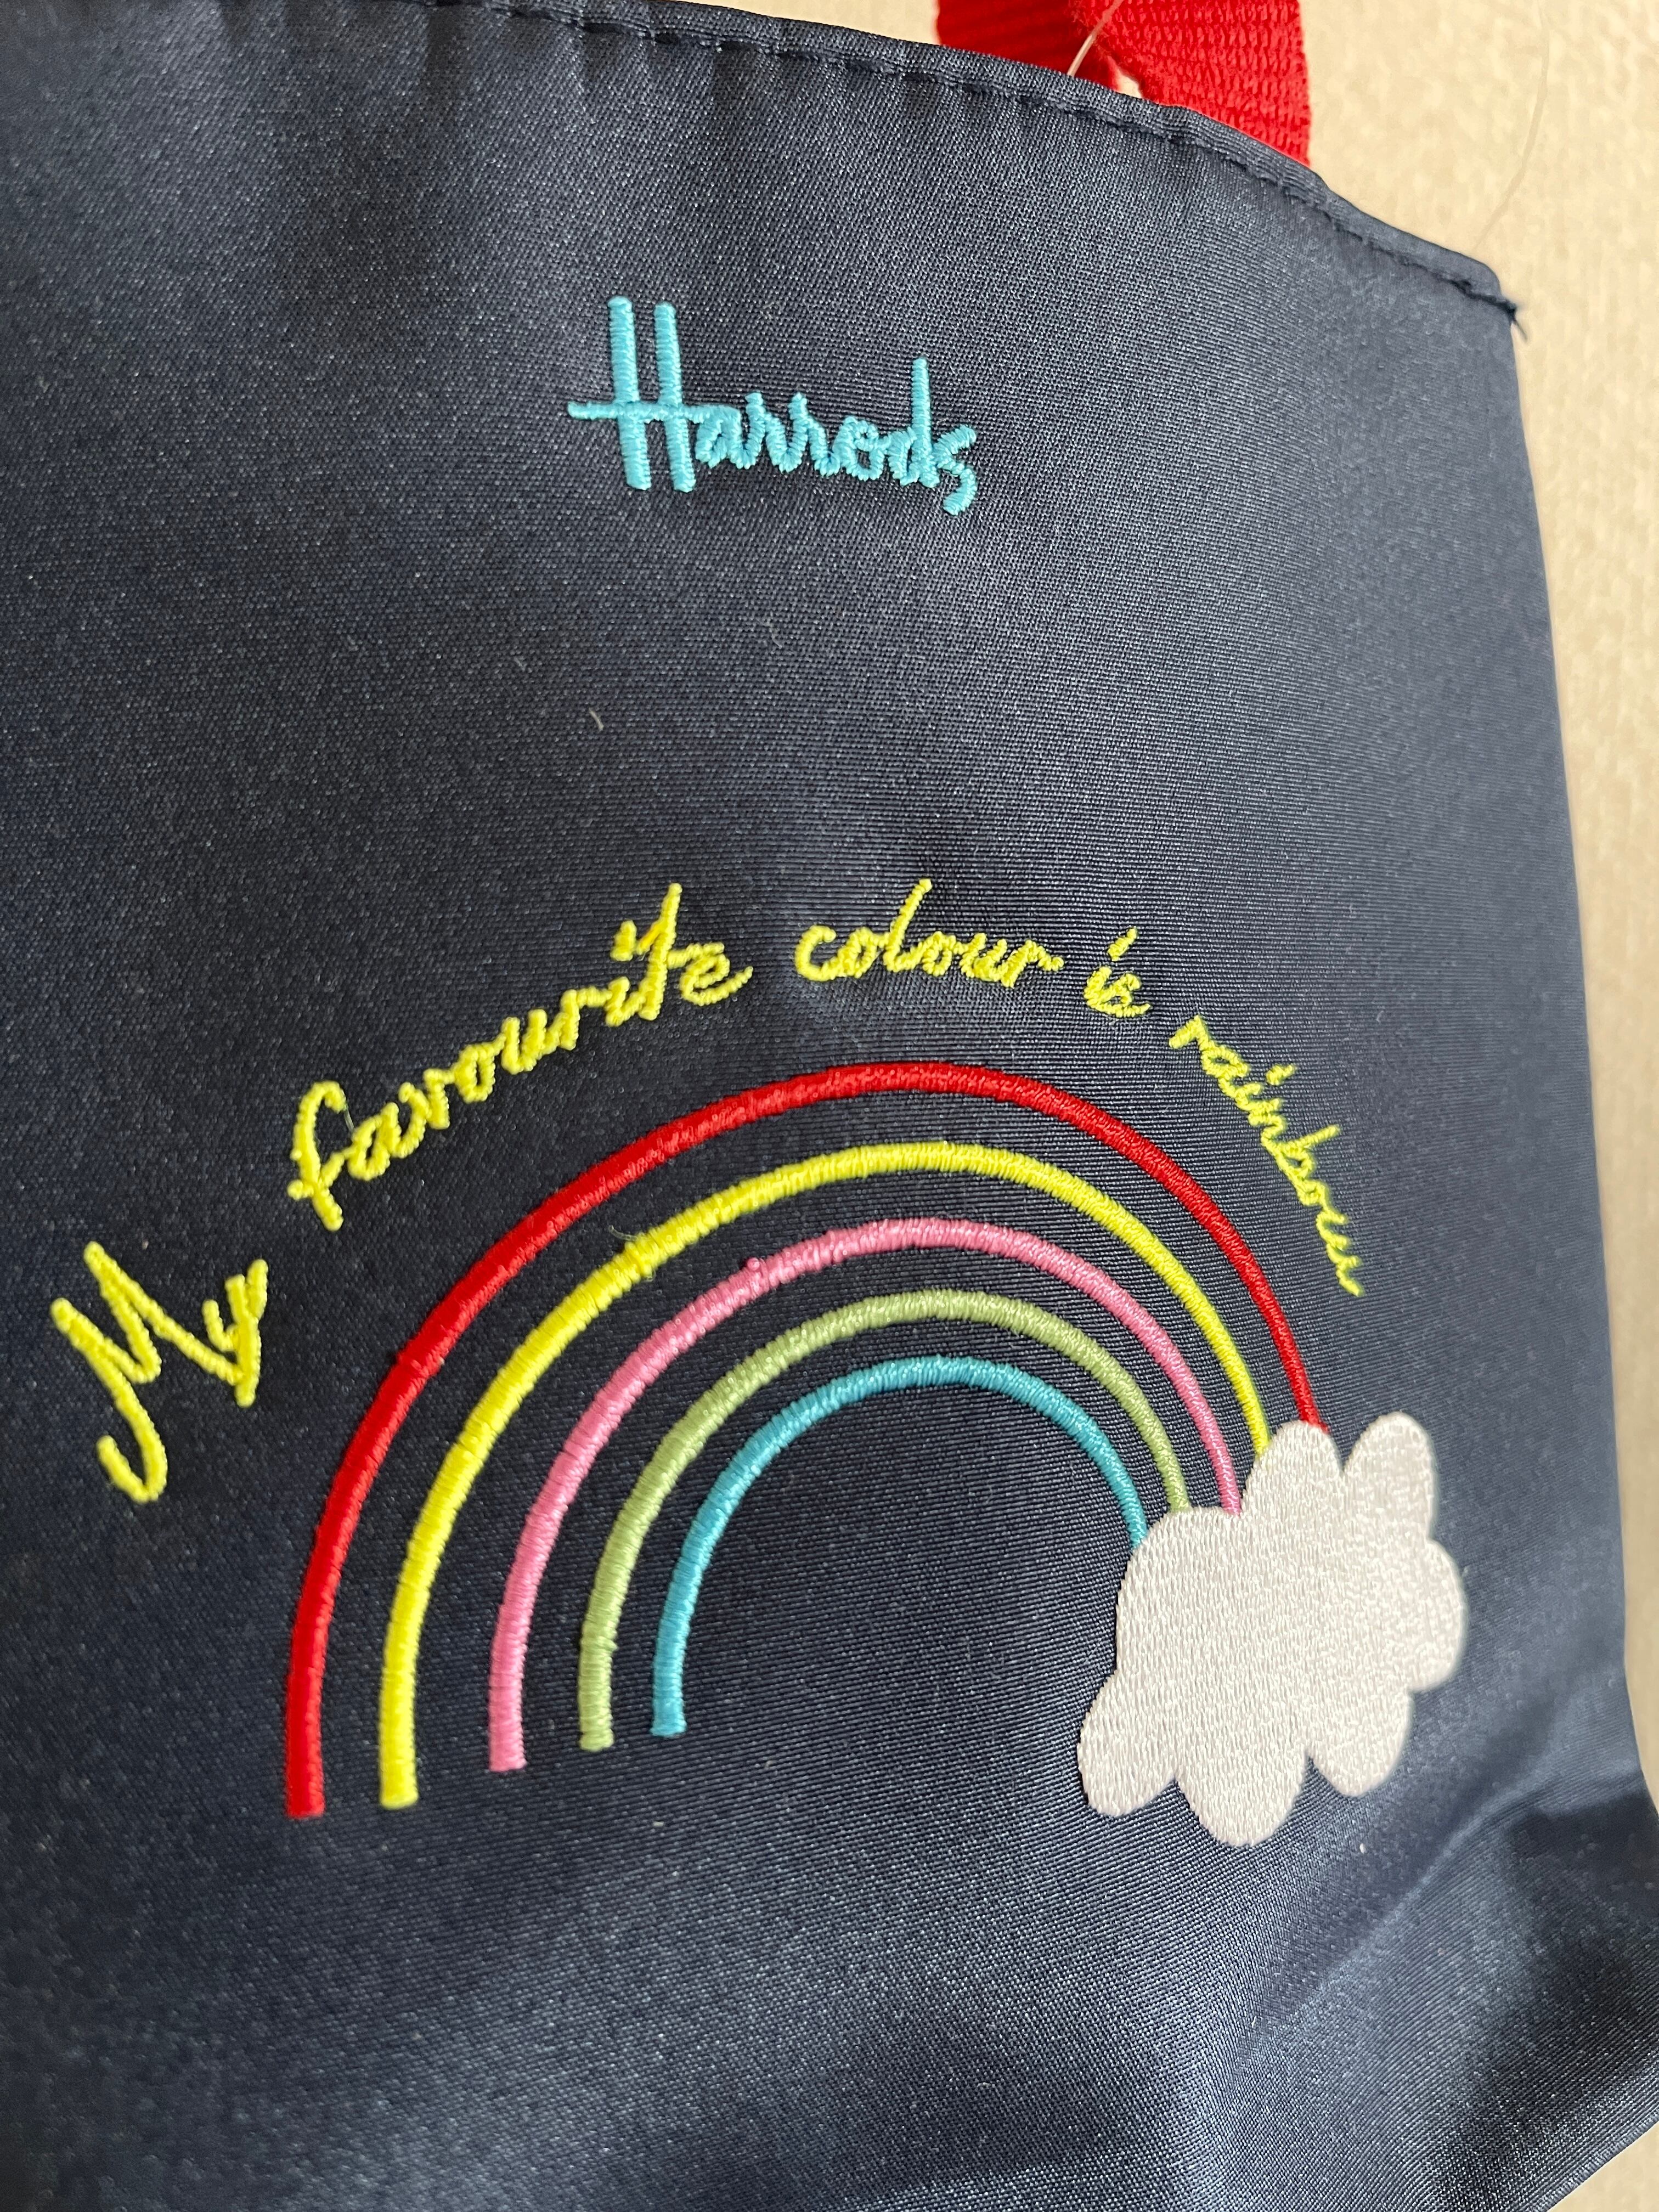 『ハロッズ/Harrods』ウェザーイラストミニバッグ Weather Bear Mini Shopper Bag